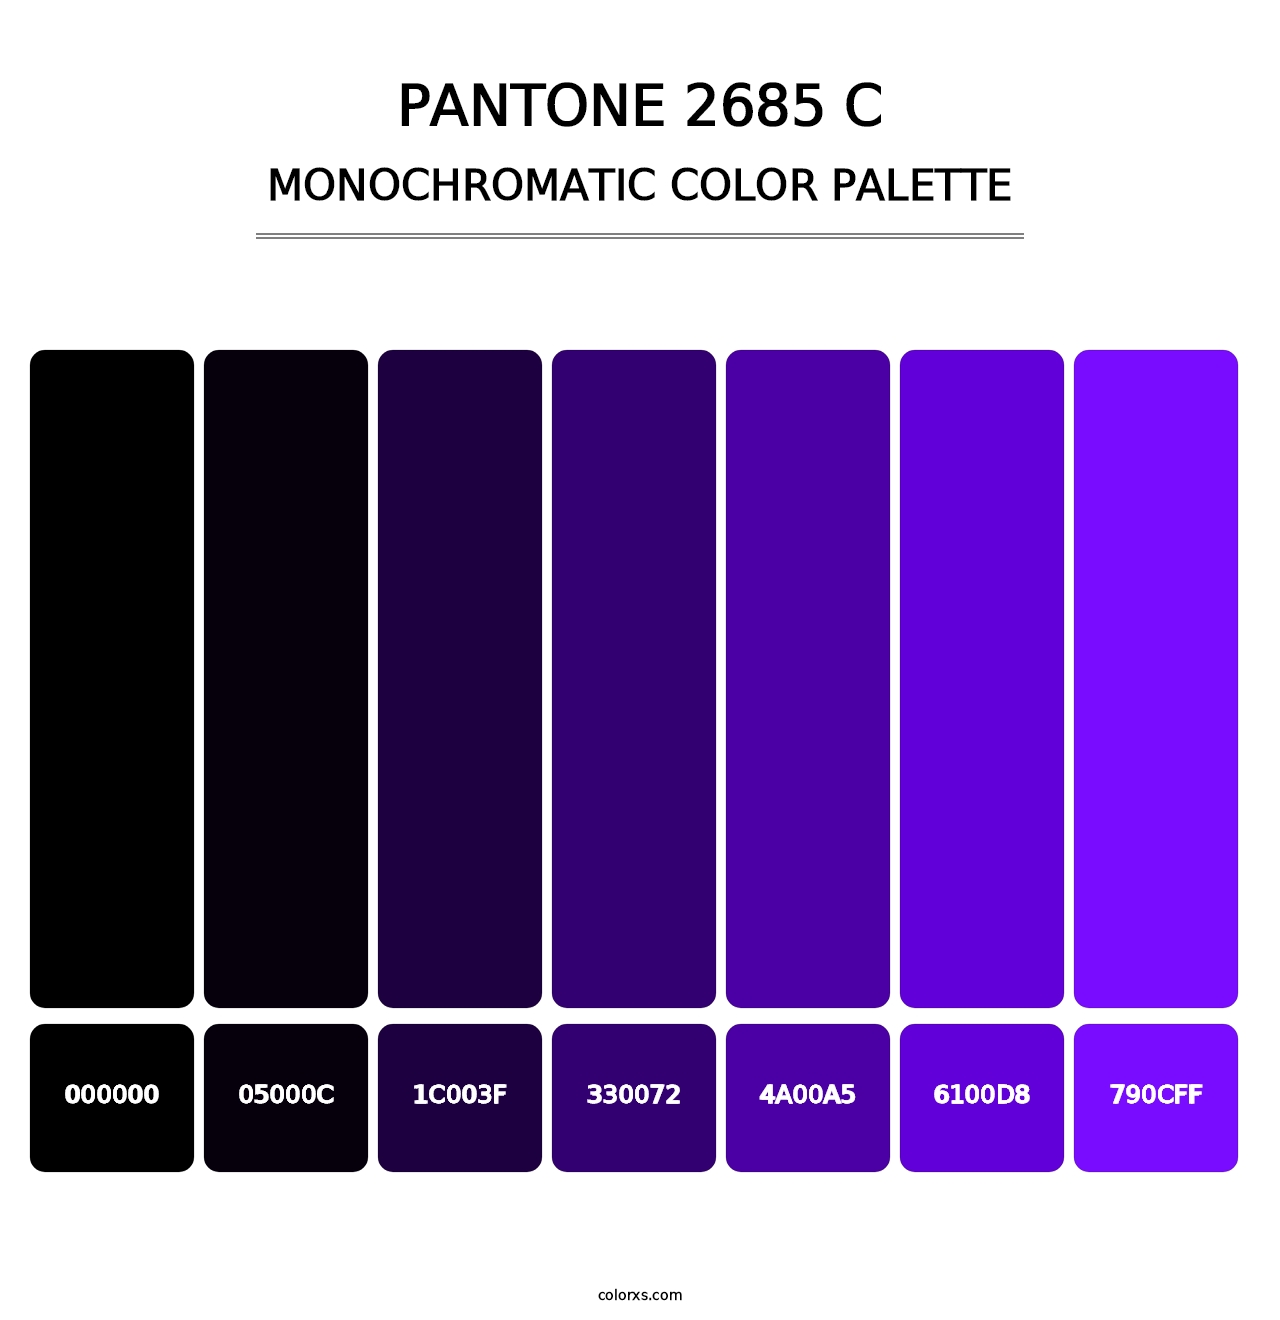 PANTONE 2685 C - Monochromatic Color Palette